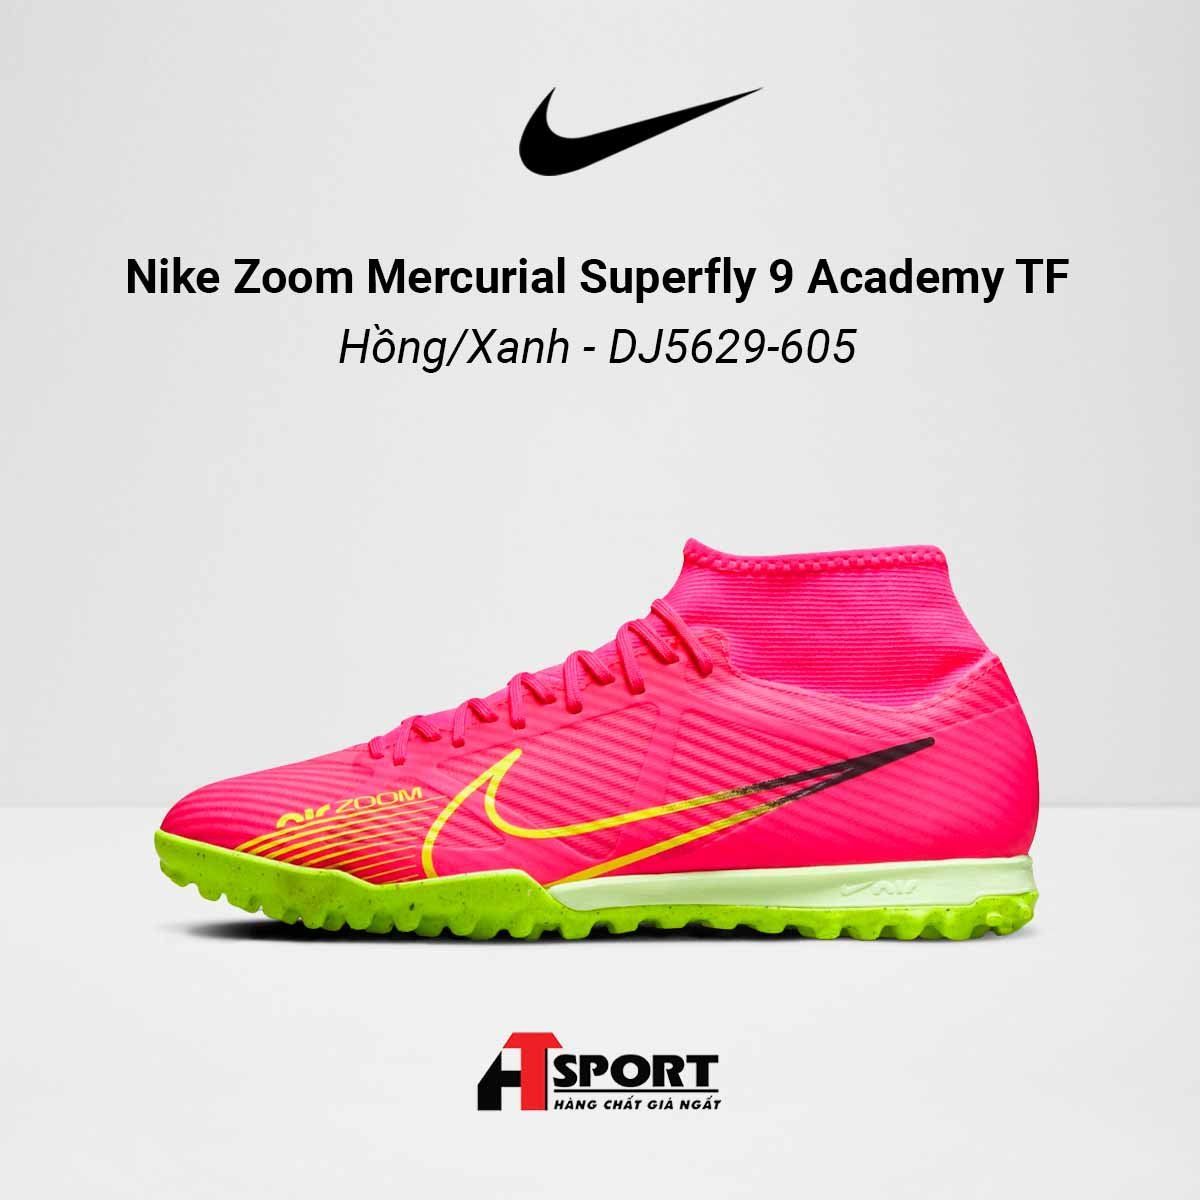  Nike Zoom Mercurial Superfly 9 Hồng/Xanh Academy TF - DJ5629-605 